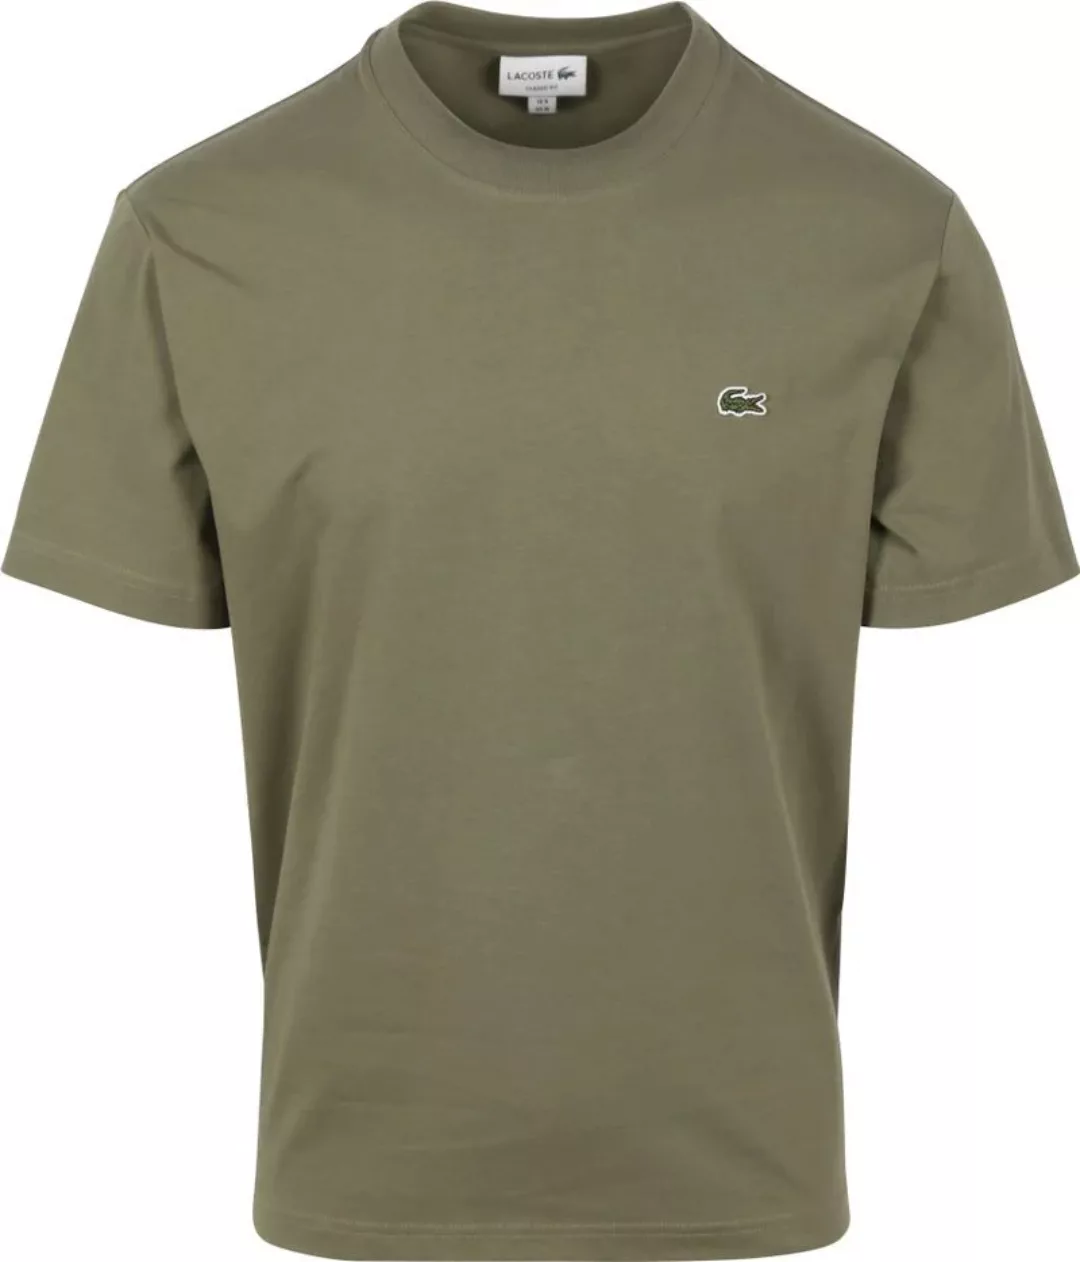 Lacoste T-Shirt Olivgrün - Größe L günstig online kaufen